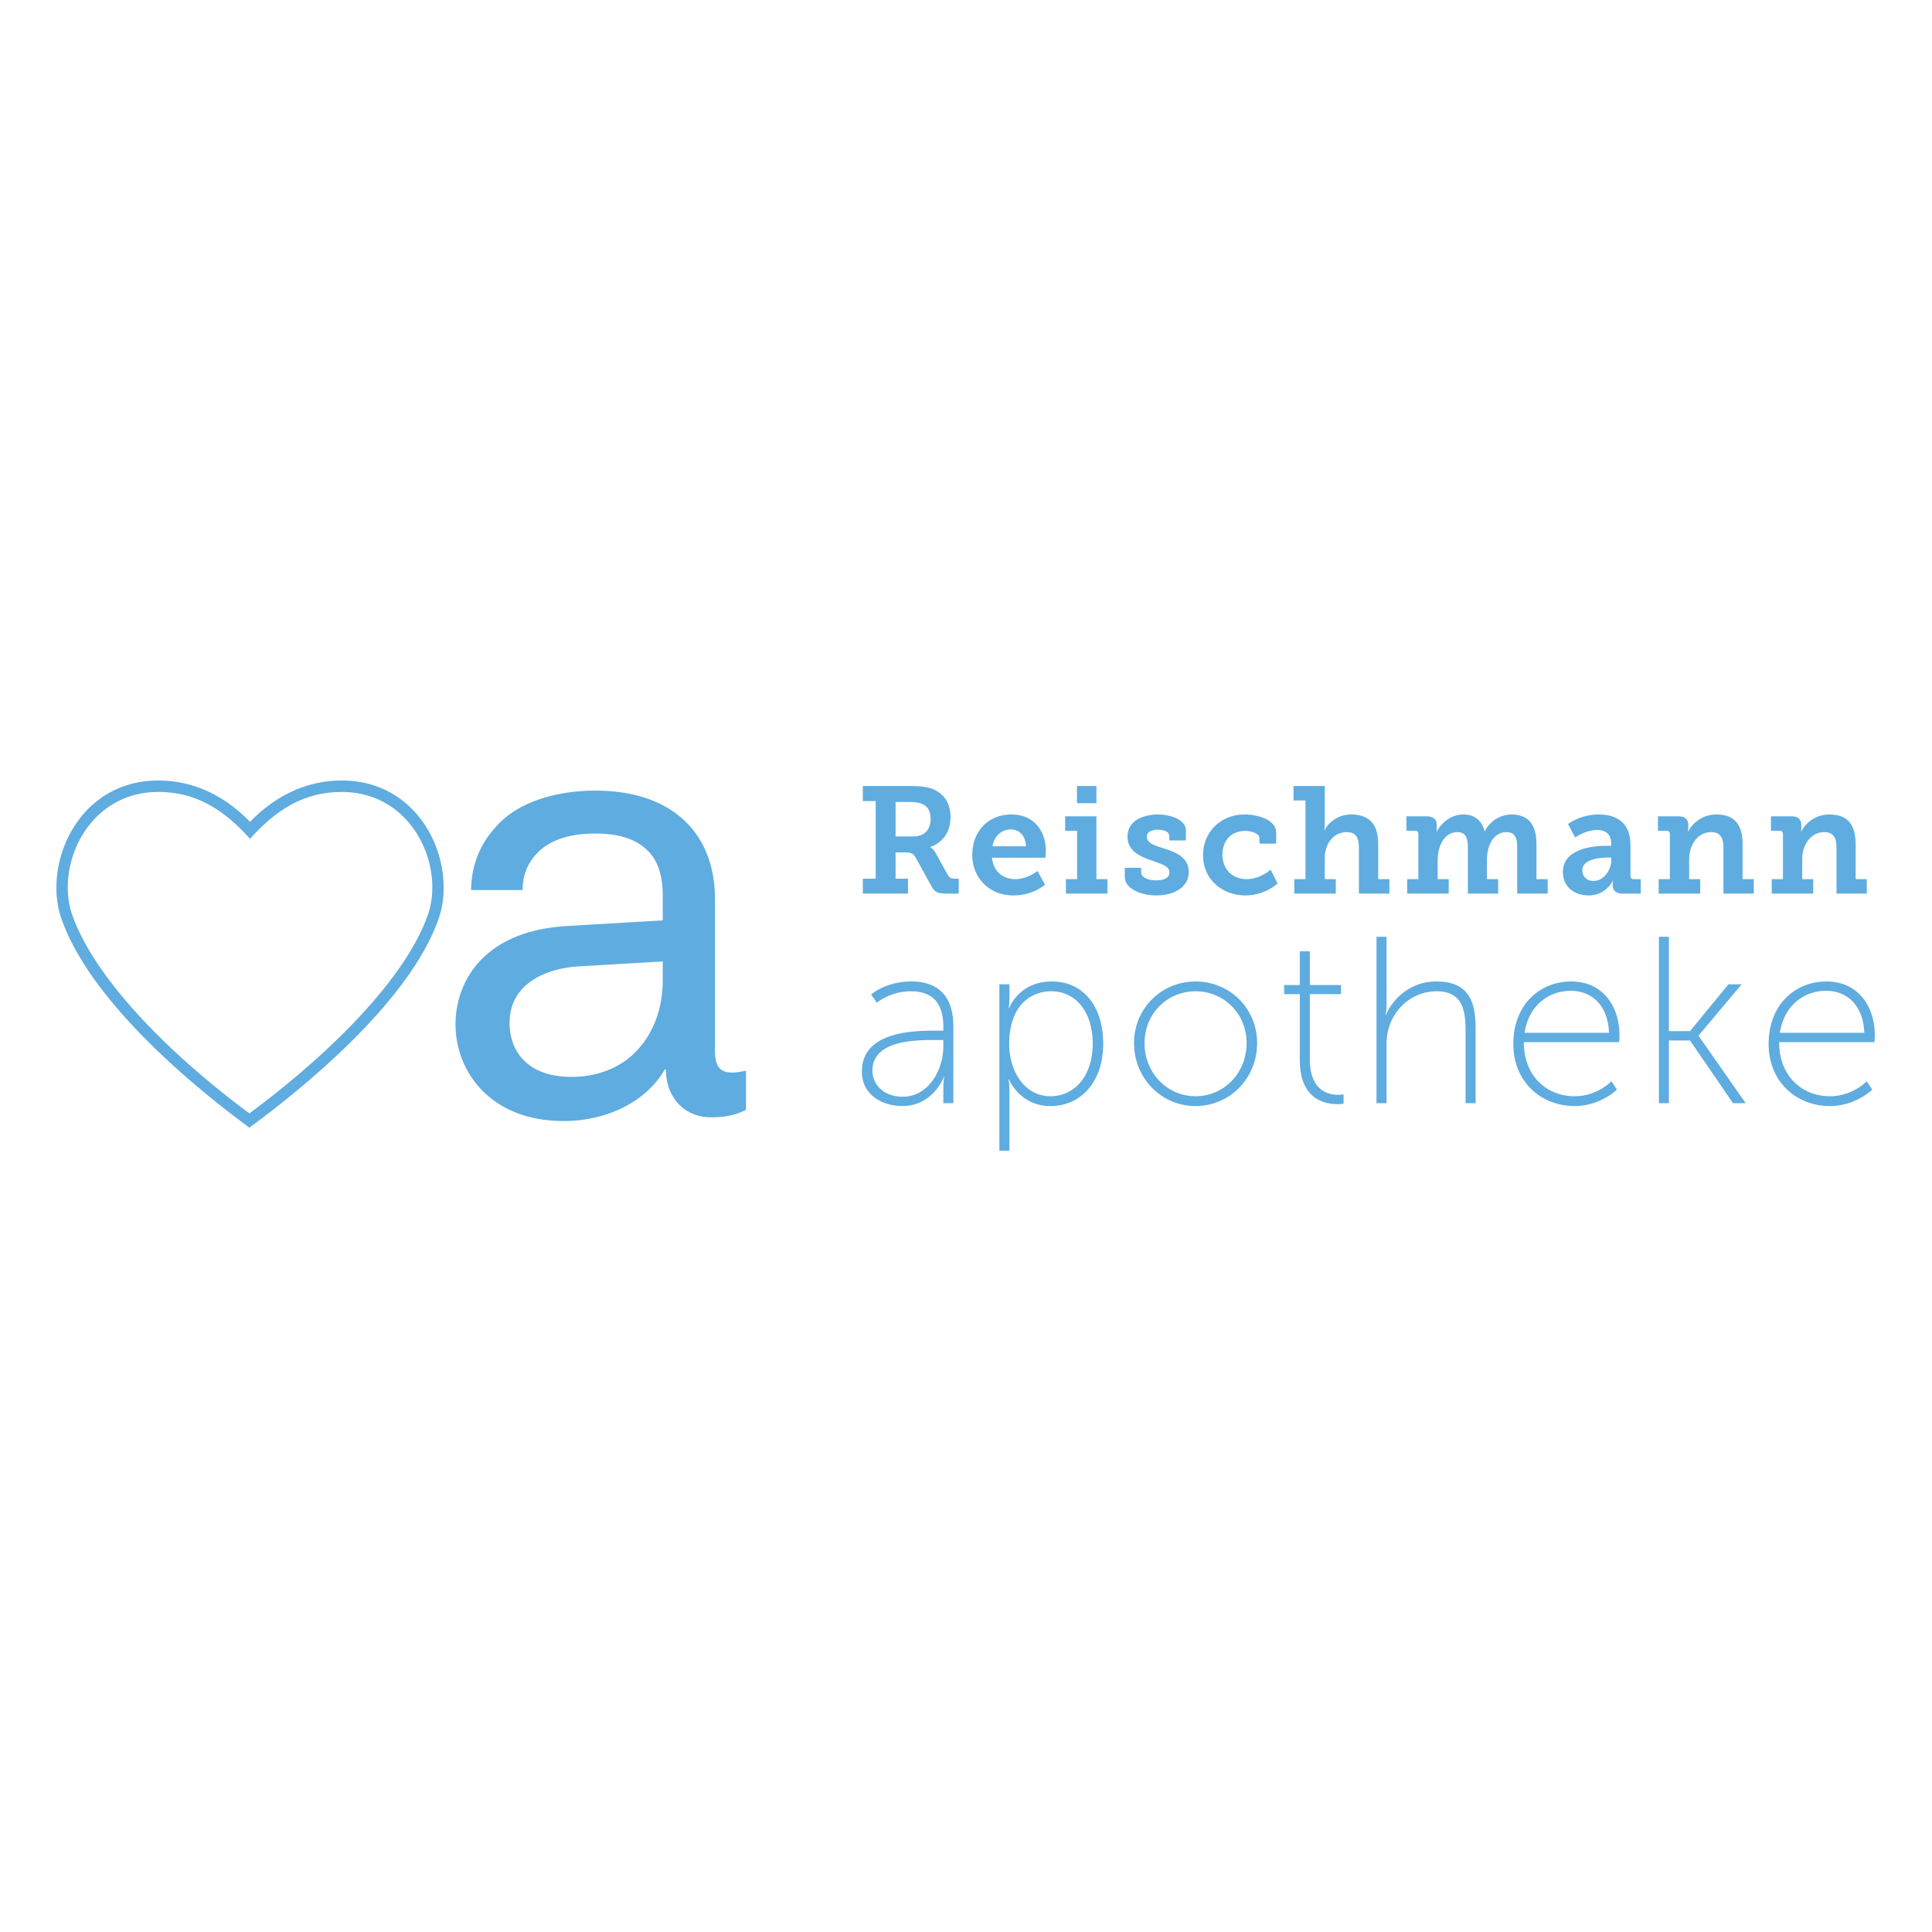 Logo der Reischmann Kronen Apotheke